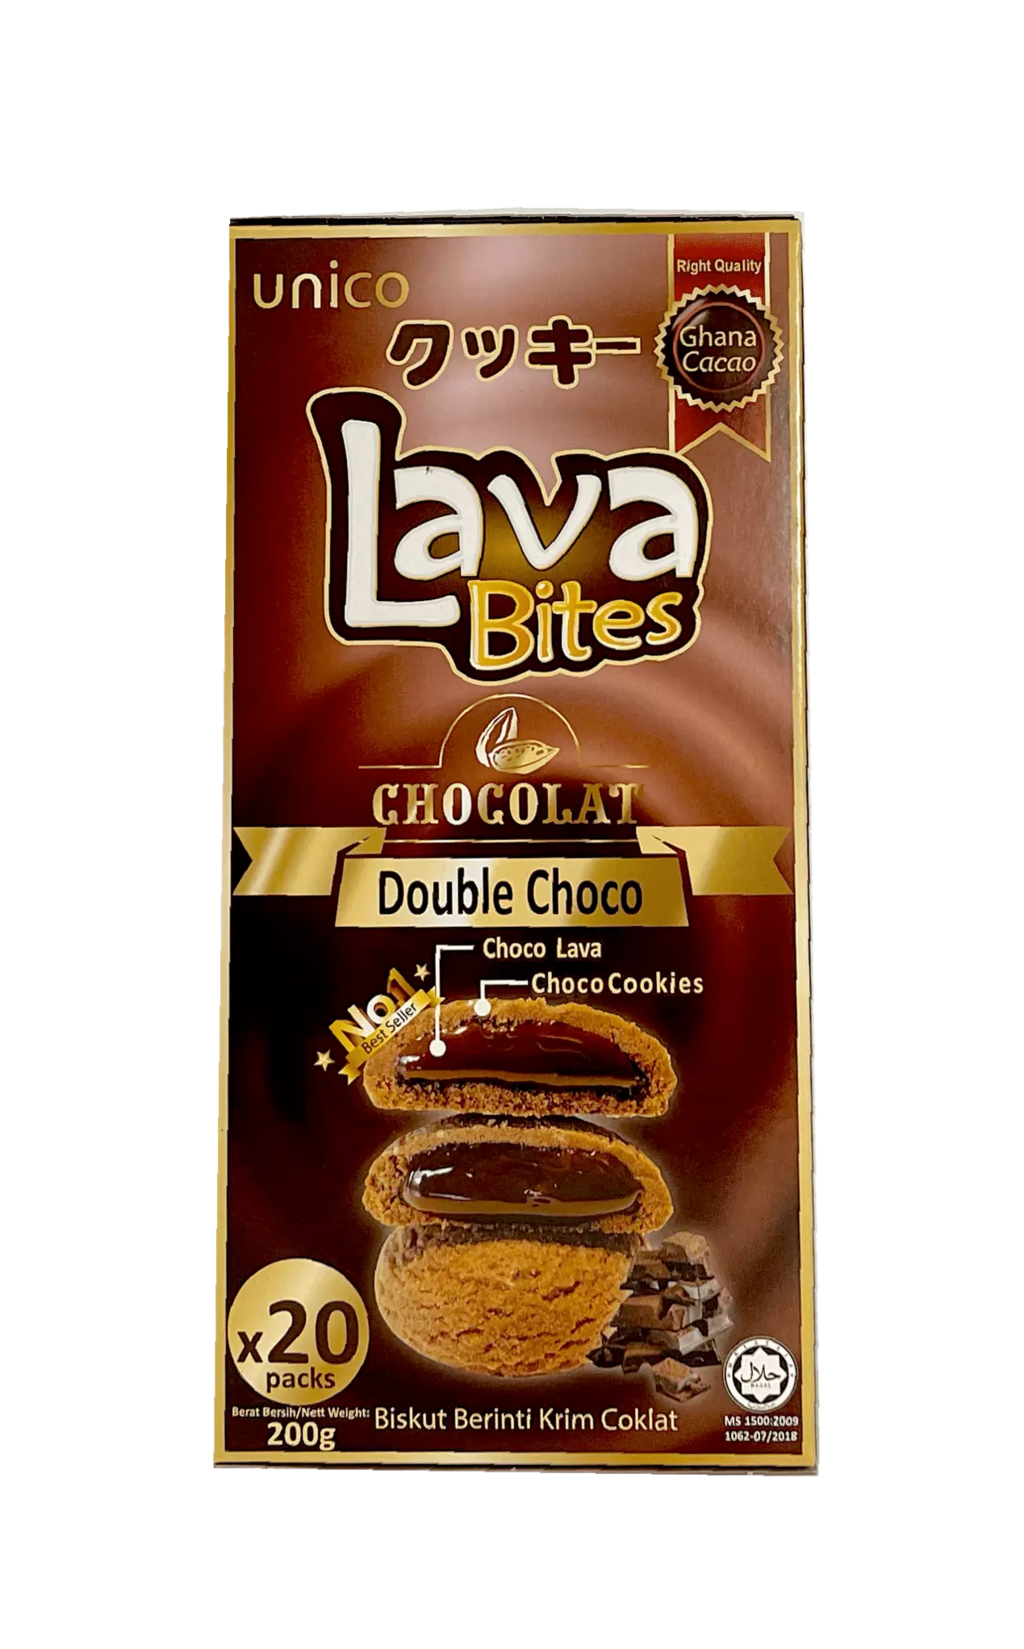 爆浆曲奇饼干 双层巧克力风味 200g My Lava Bites Unico 马来西亚